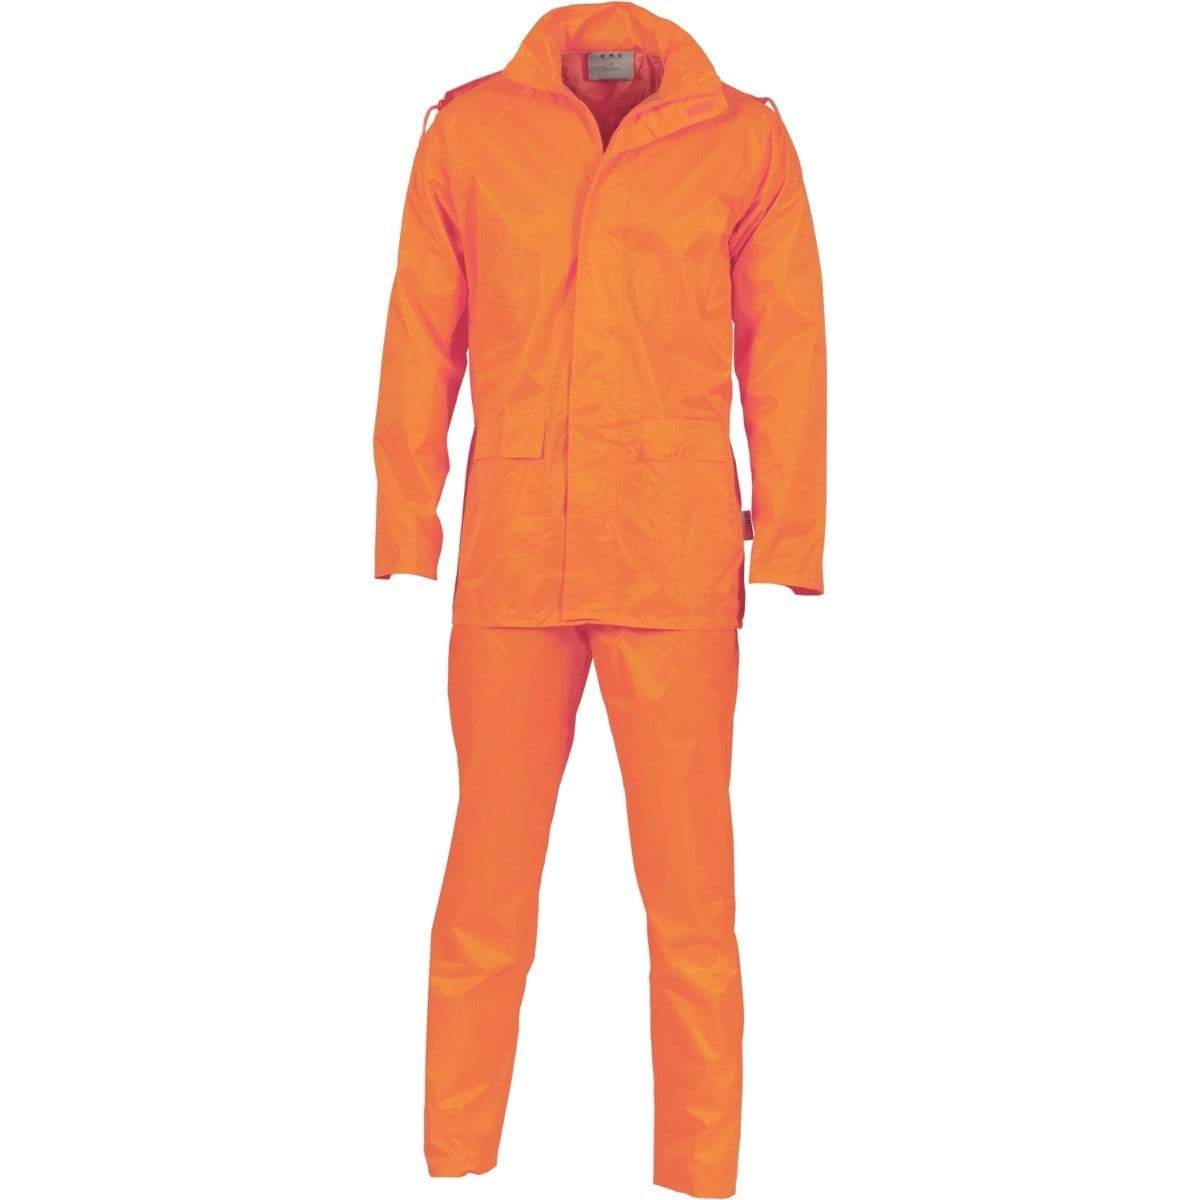 Dnc Workwear Rain Set In Bag - 3708 Work Wear DNC Workwear Orange S 